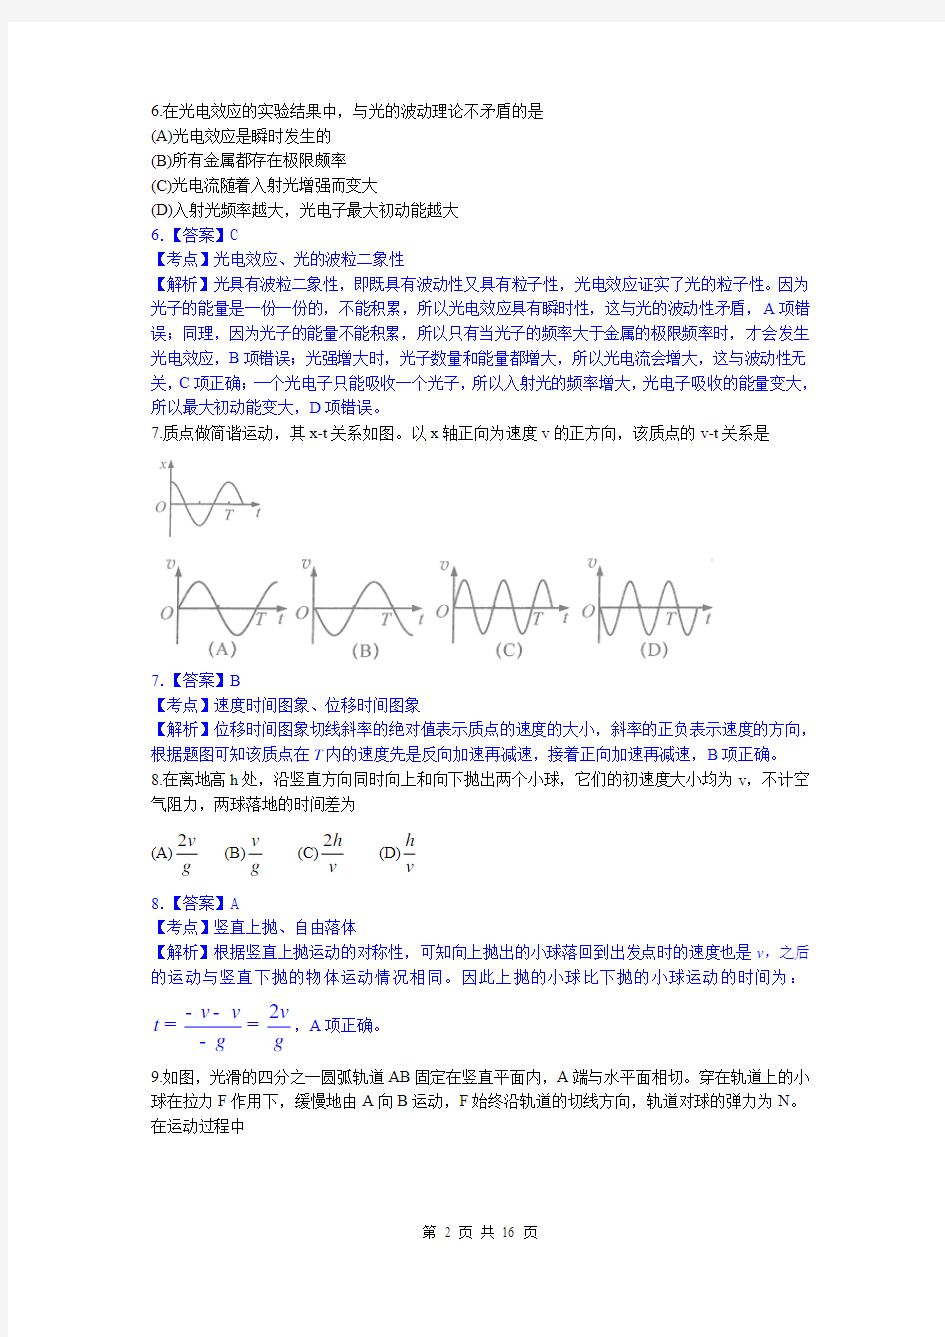 2014年高考真题——物理(上海卷)解析版 Word版含答案